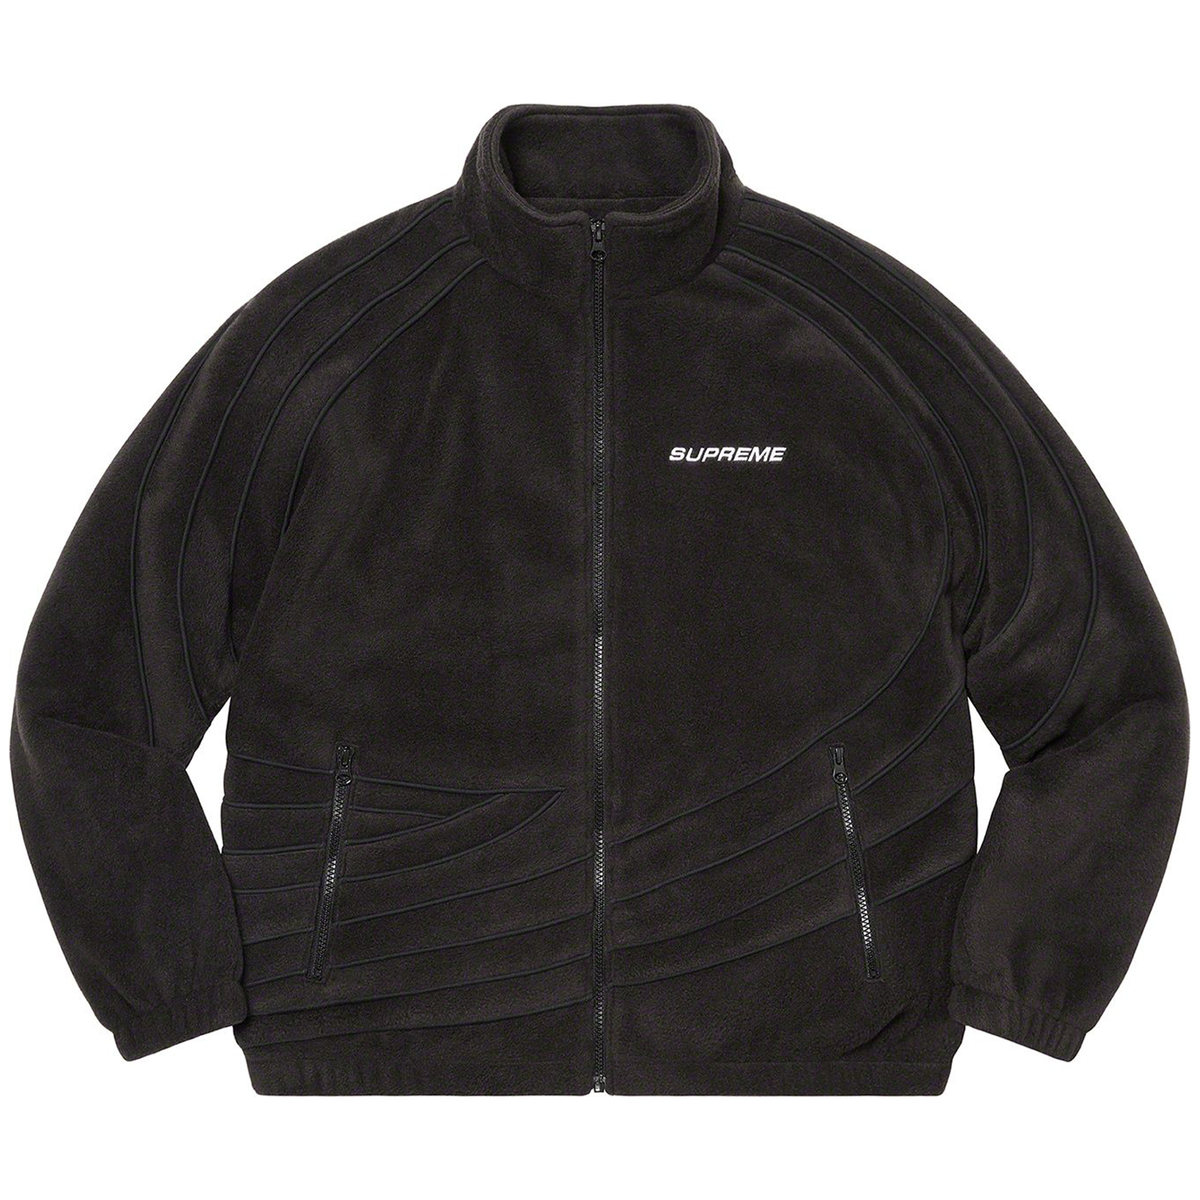 Supreme “Racing” - Fleece Jacket - Small